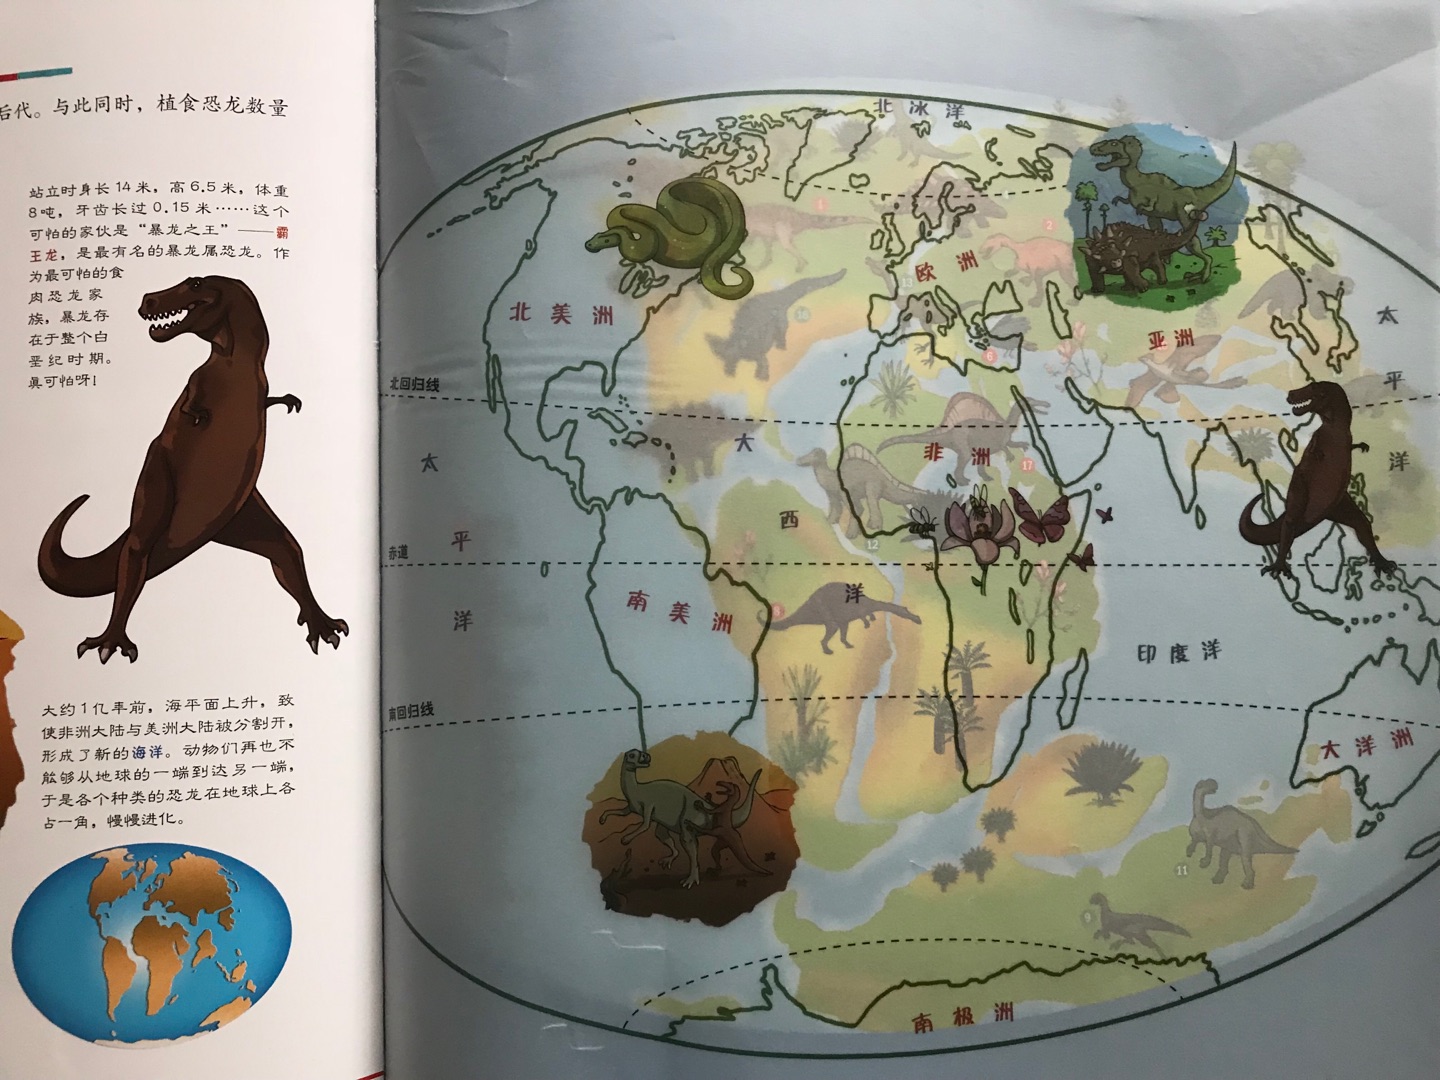 基于地图的百科，有动物、恐龙、旅行、宇宙四个主题，知识比较简单适合低龄孩子当作绘本读